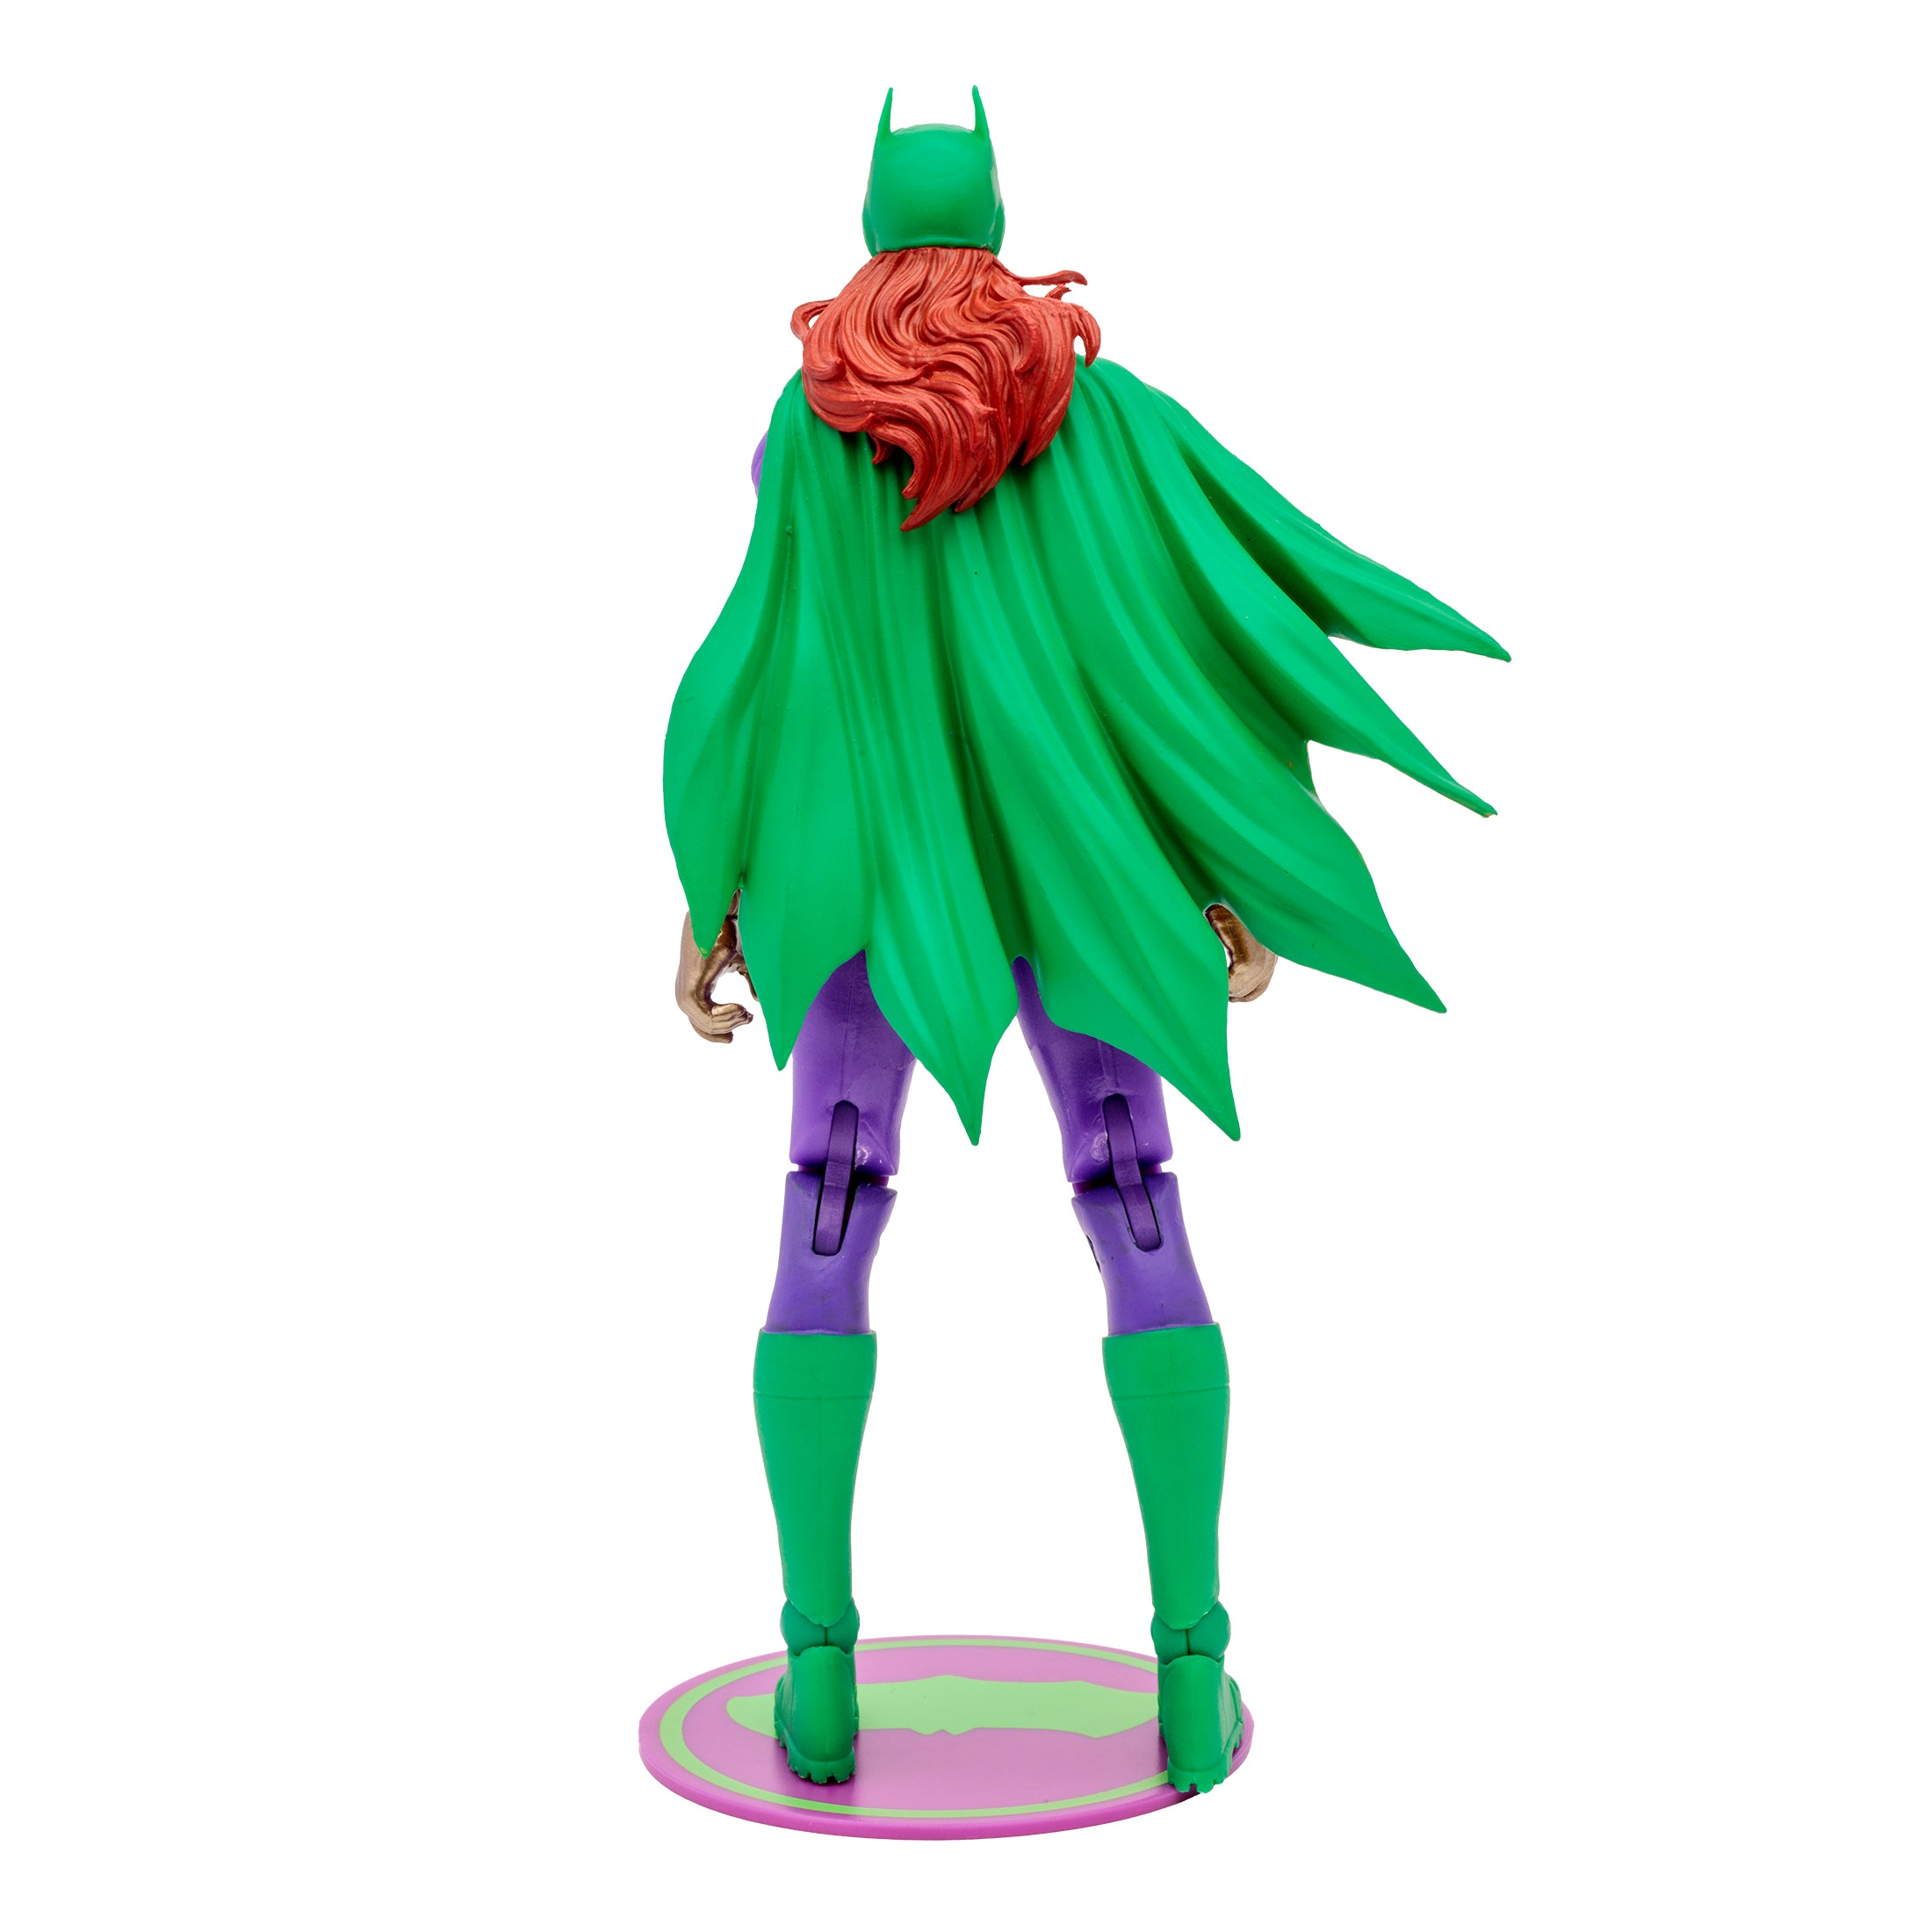 McFarlane Figura de Accion: Dc Comics Batman Three Jokers - Batgirl Jokerizada Gold Label 7 Pulgadas